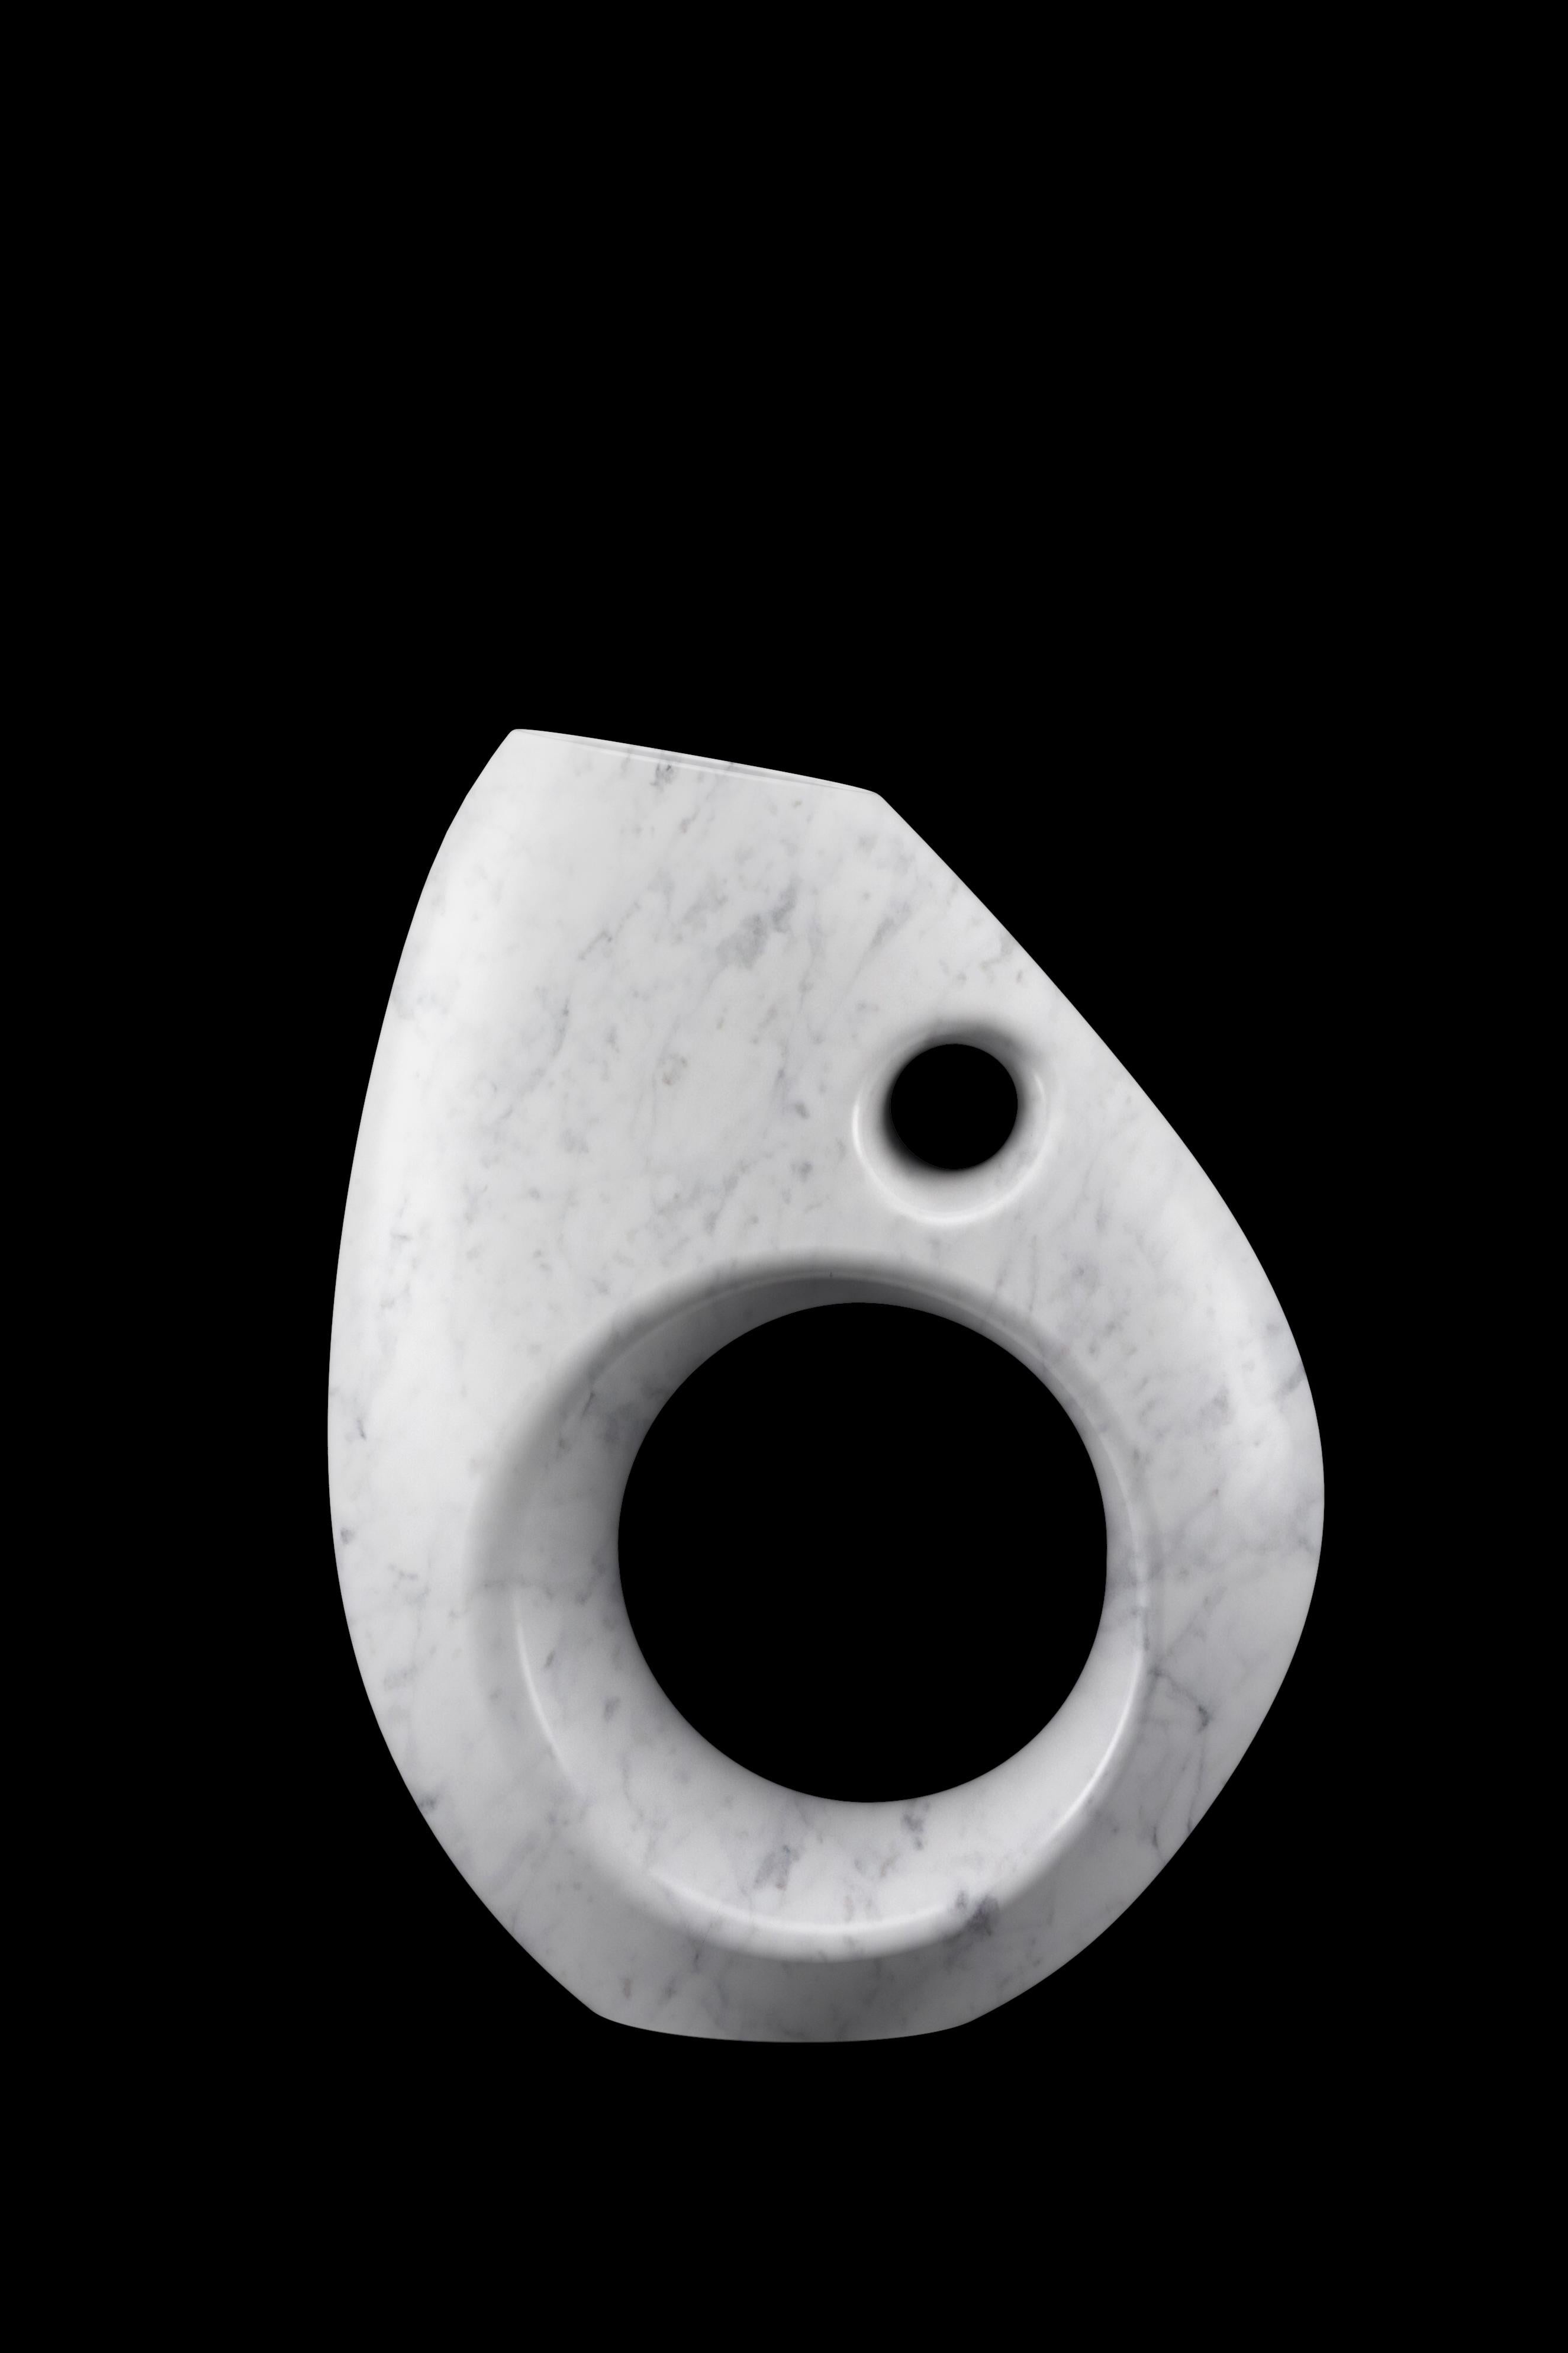 Bedeutende skulpturale Vase, von Hand aus einem massiven Block aus weißem Carrara-Marmor gehauen. 

Abmessungen der Vase: L 39 B 16,5, H 50 cm. Erhältlich in verschiedenen Marmorsorten, Onyx und Quarzit.  

Limitierte Auflage von 35 Stück.

Jede